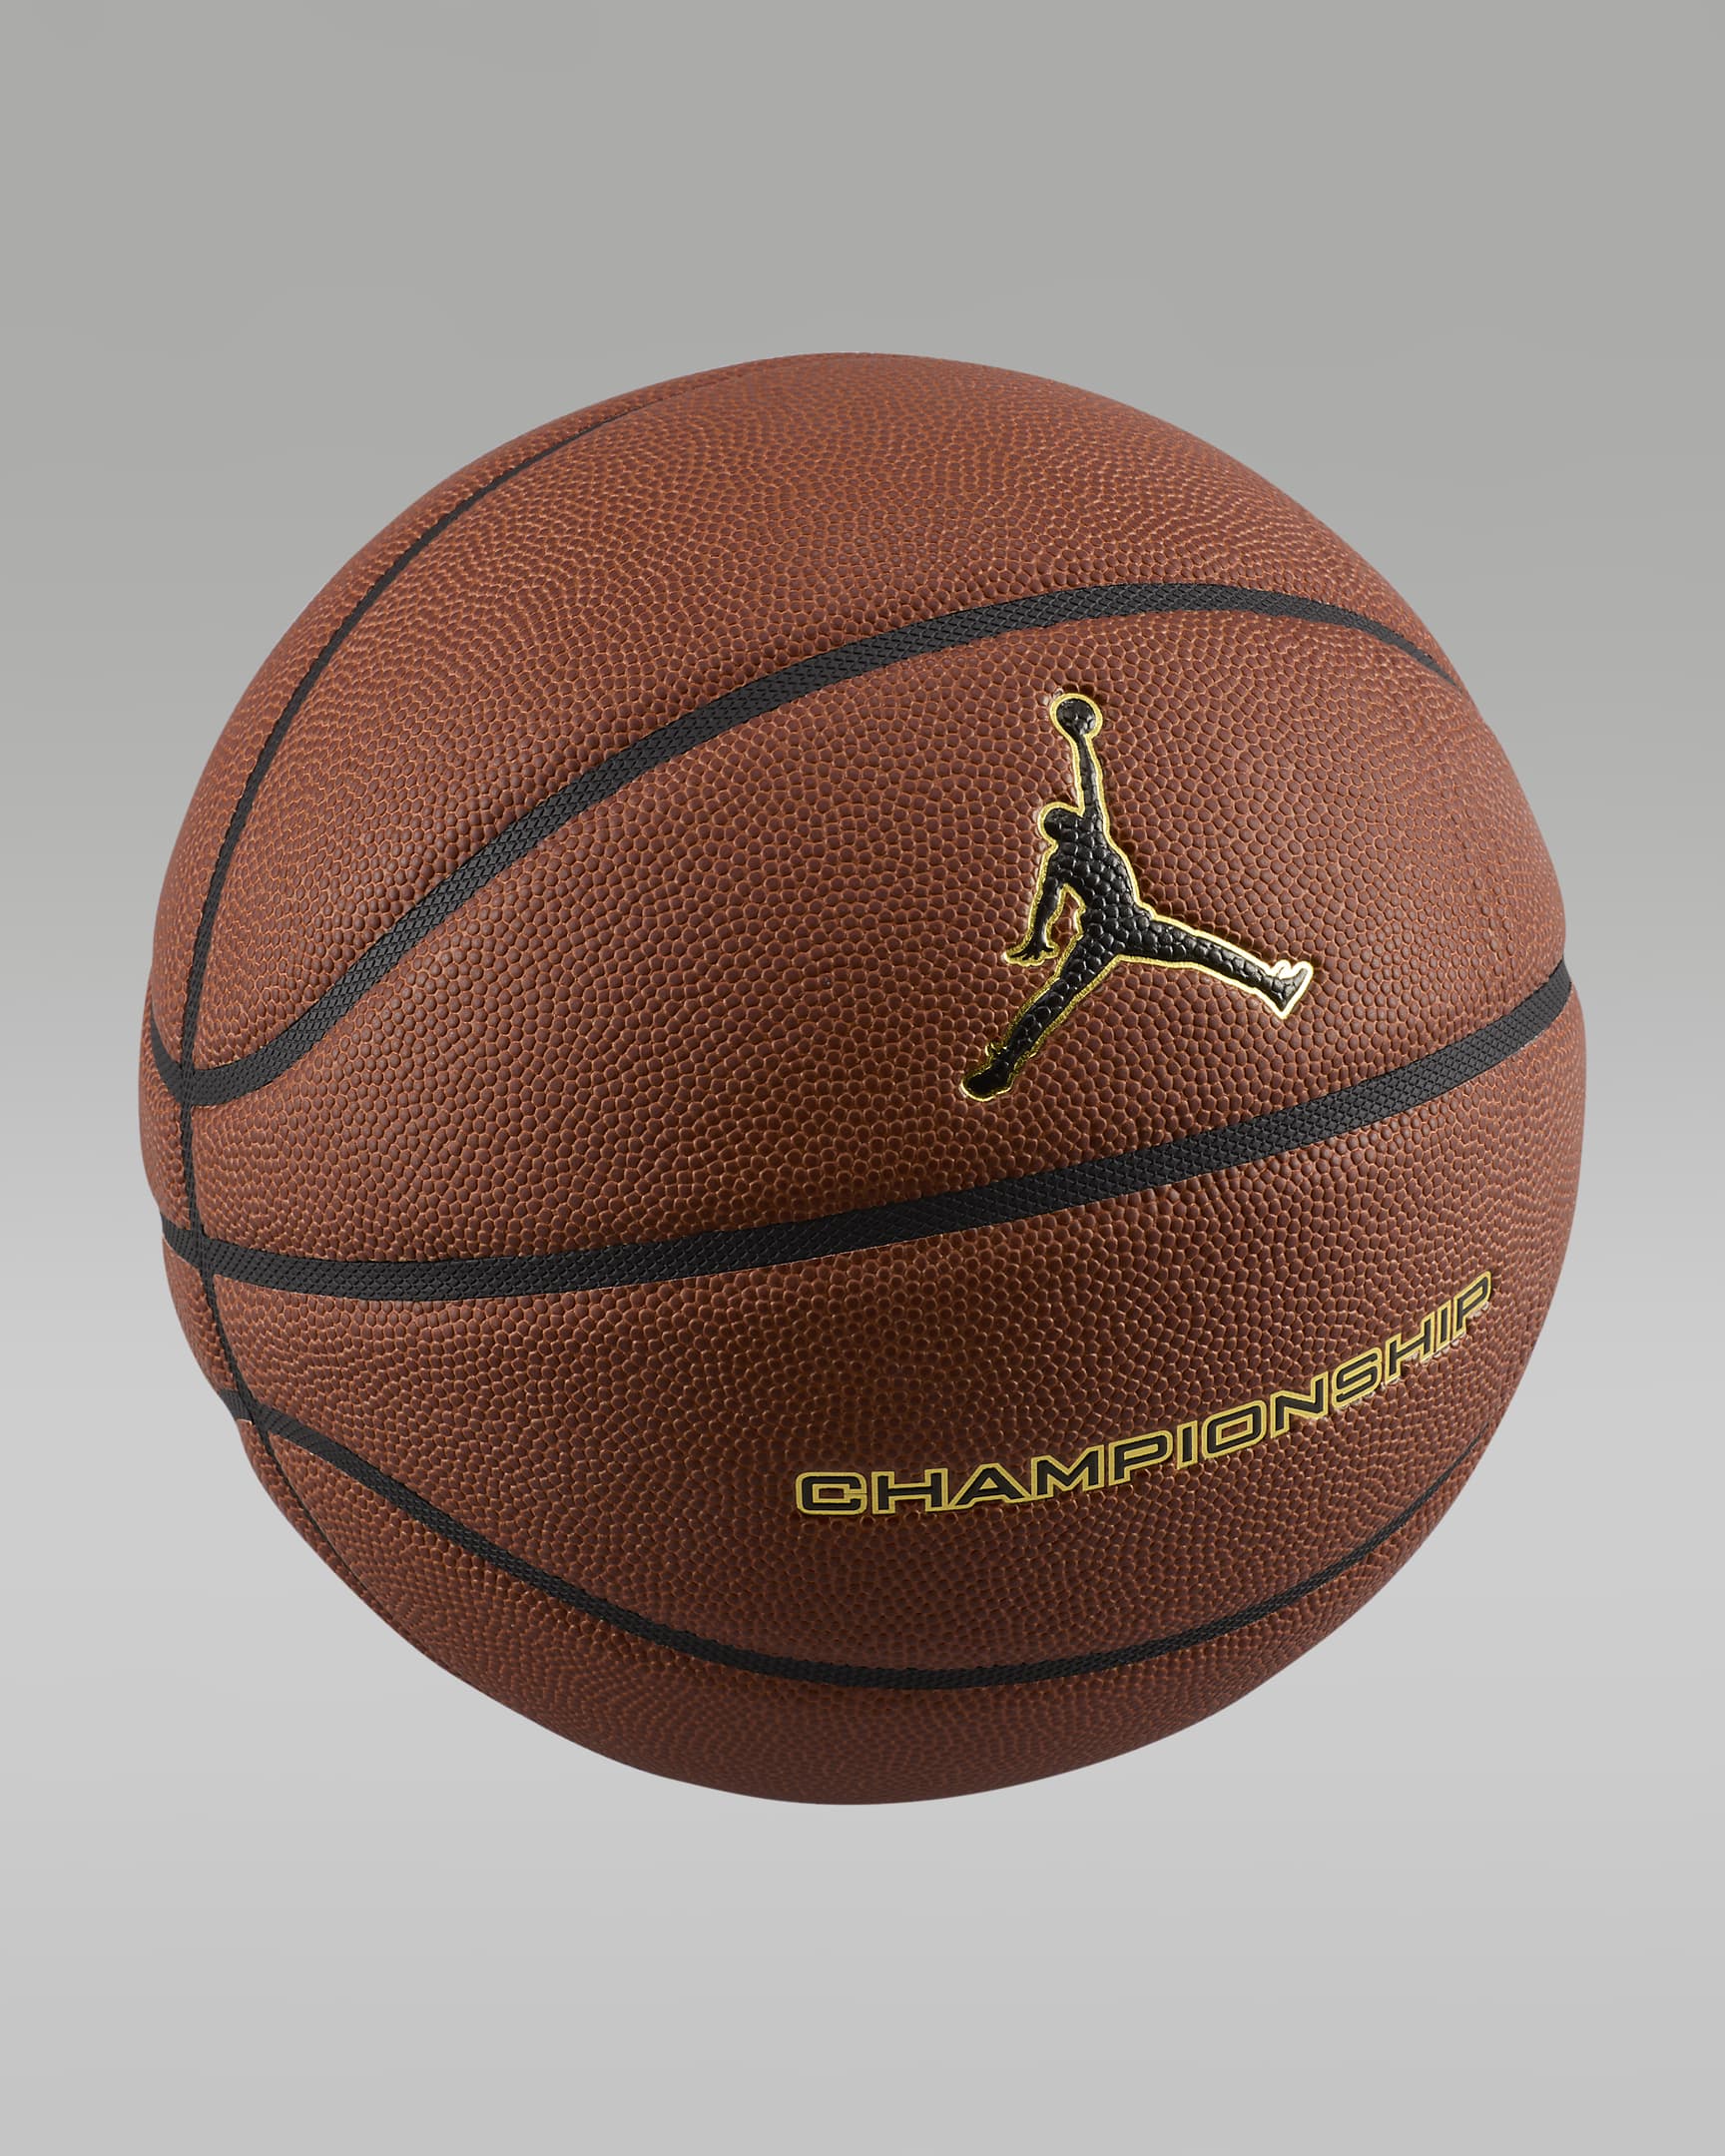 Jordan basketbal (zonder lucht) - Amber Court/Zwart/Metallic Gold/Zwart